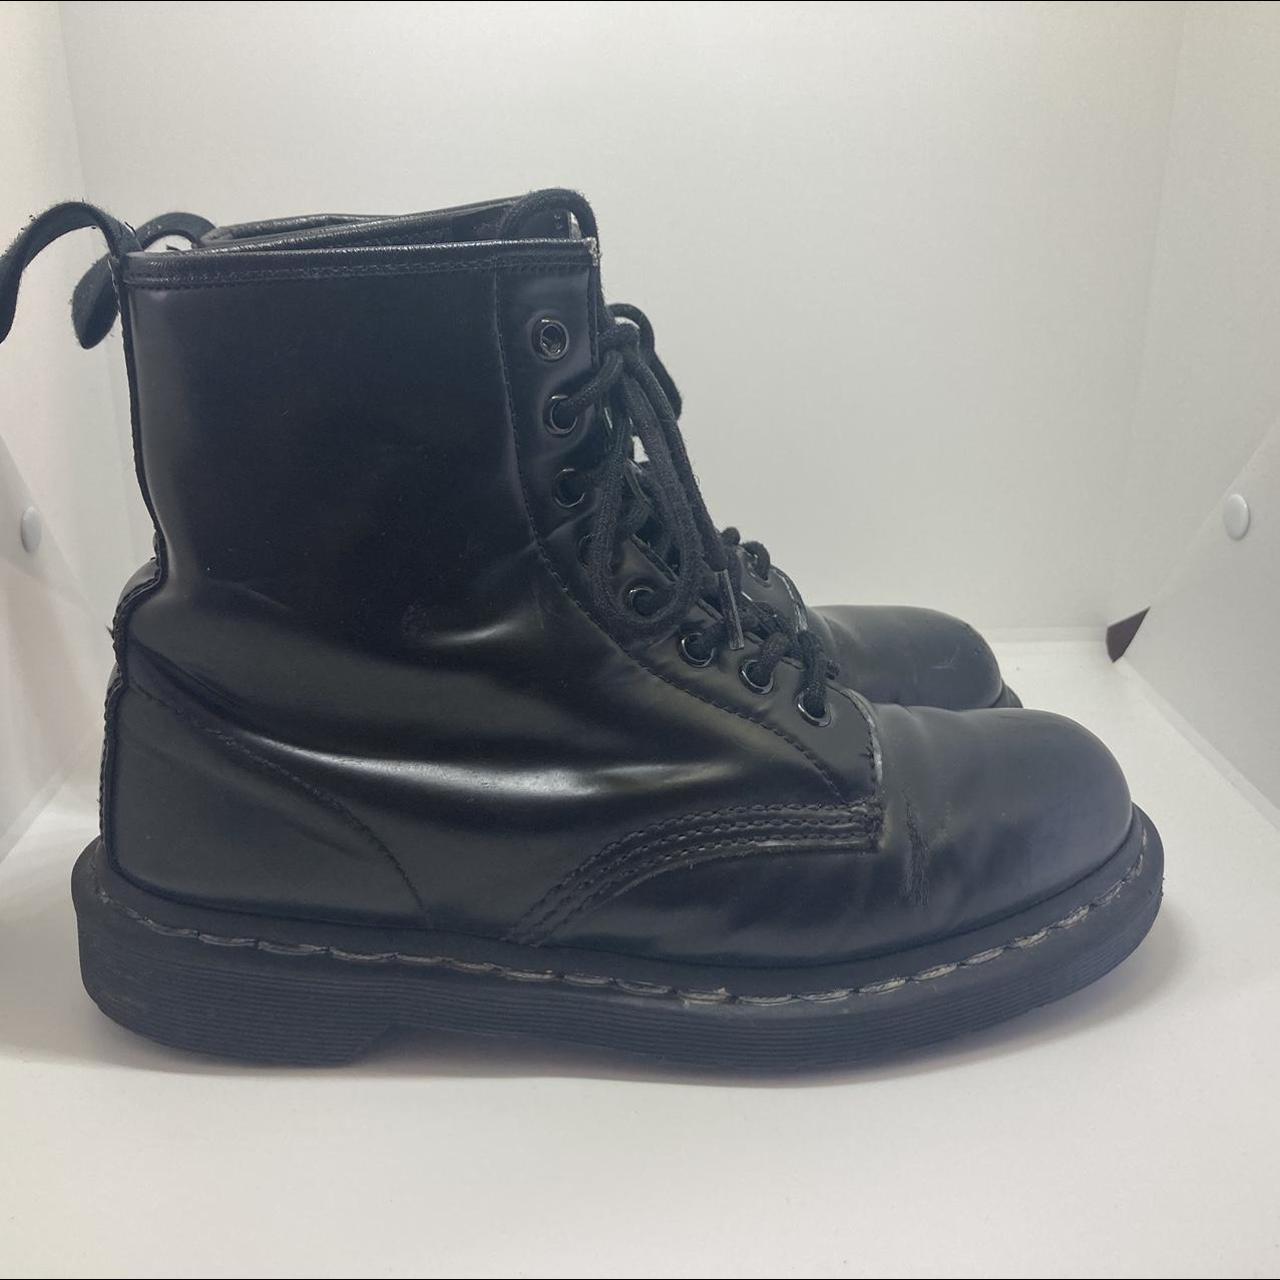 Black Doc Marten Boots US size 8 EU size 41 Signs... - Depop